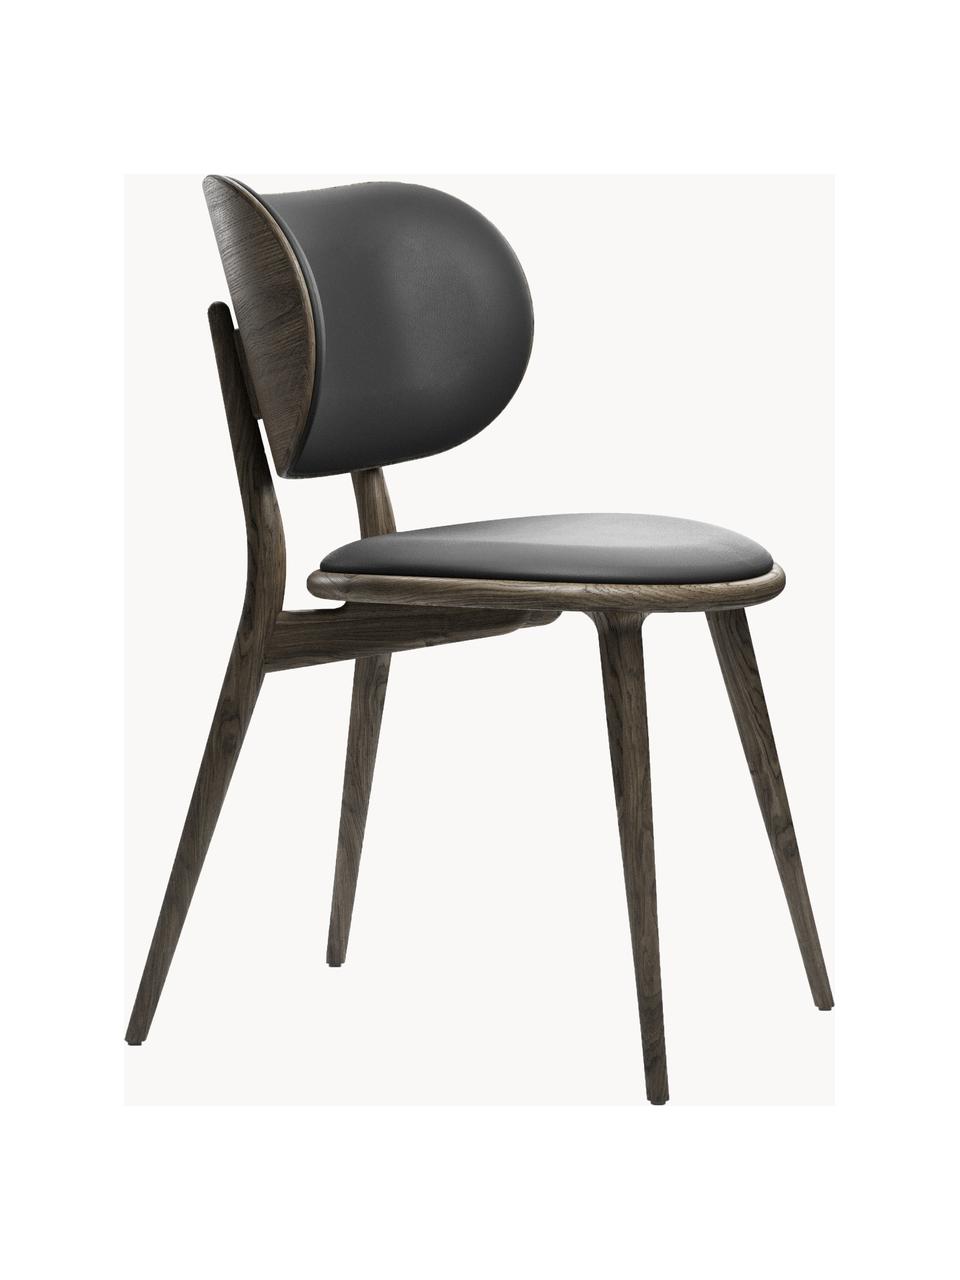 Kožená židle s dřevěnými nohami Rocker, ručně vyrobená, Černá, tmavé dubové dřevo, Š 52 cm, H 44 cm